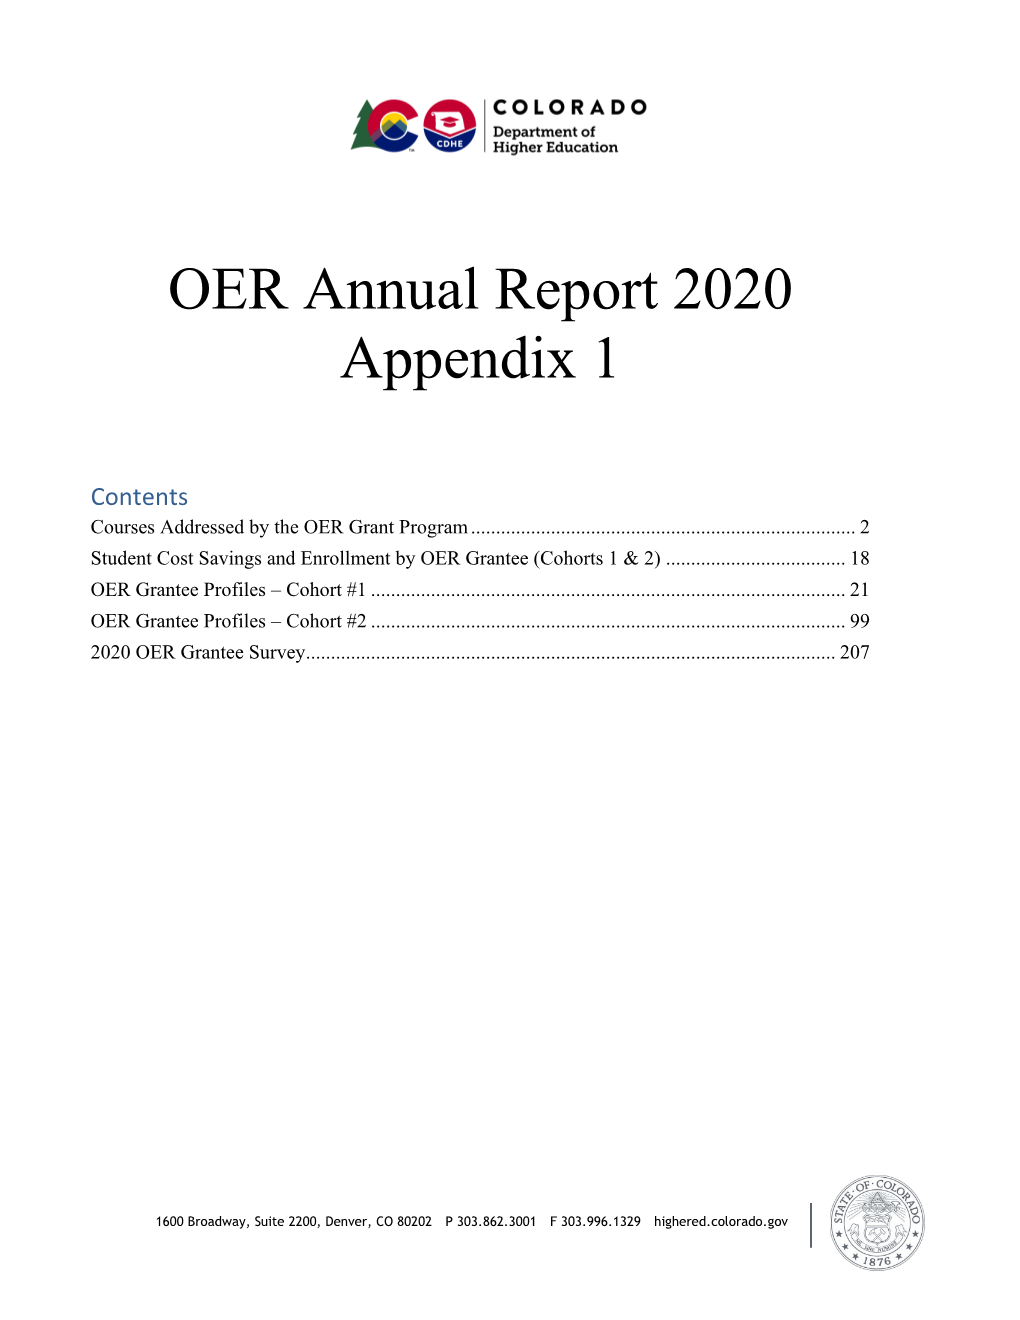 OER Annual Report 2020 Appendix 1